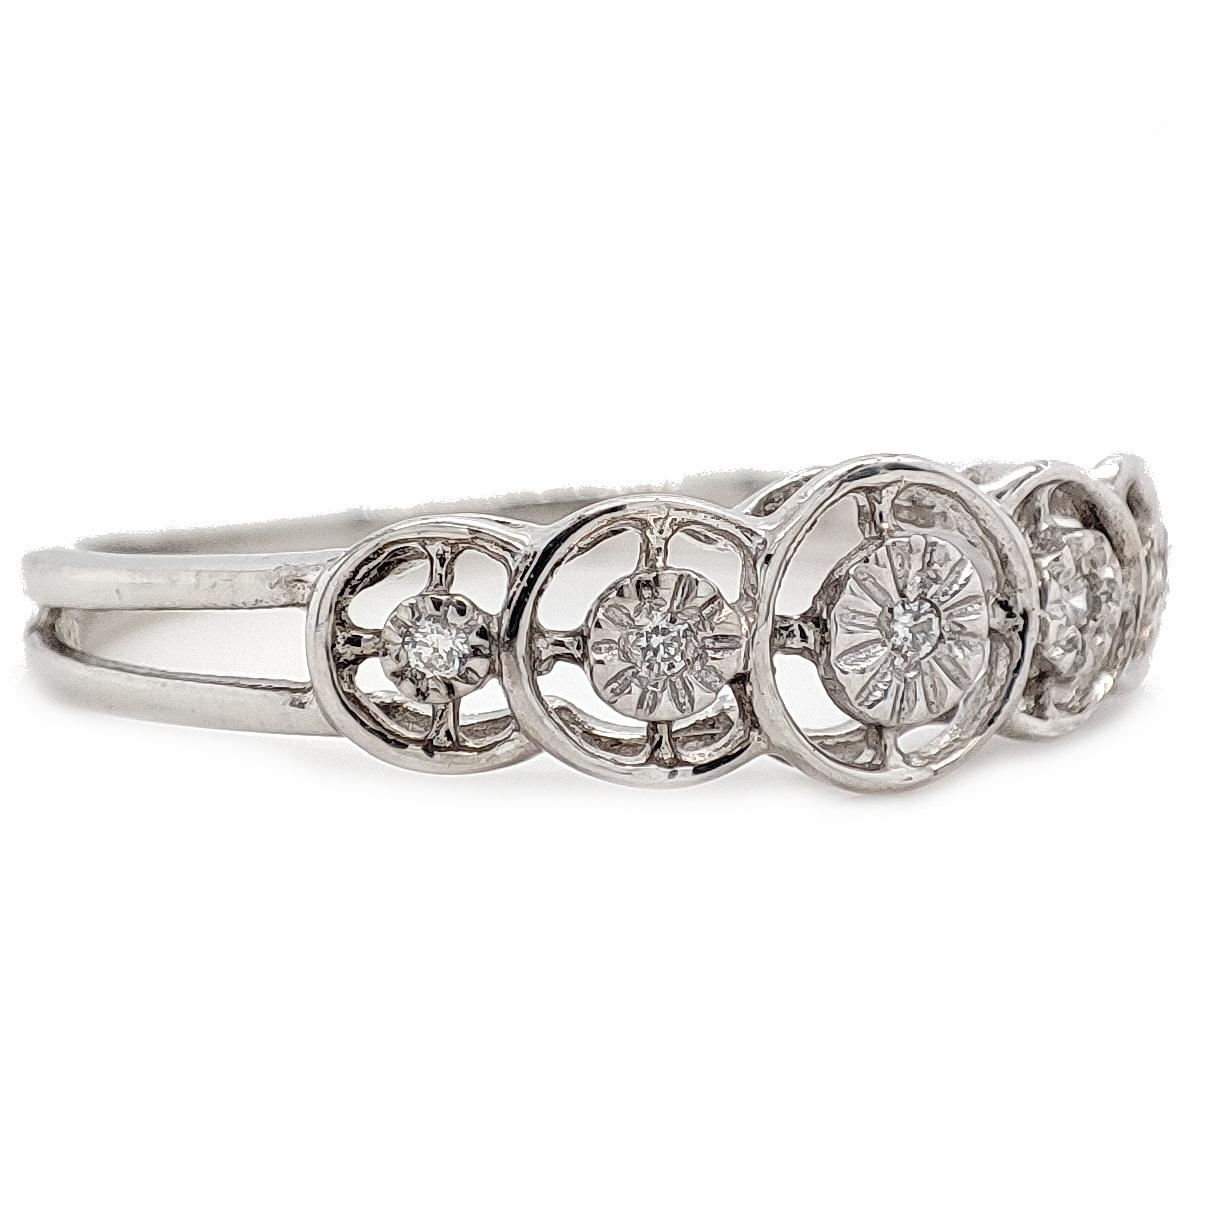 FÜR UNS KUNDEN KEINE MEHRWERTSTEUER!

Dieser elegante Ring enthält einen zierlichen weißen Diamanten von 0,05 Karat (D - F) mit einer Reinheit von VS1 - VS2, der in ein Band aus 14 Karat Weißgold eingefasst ist. Die zierliche Größe und das filigrane